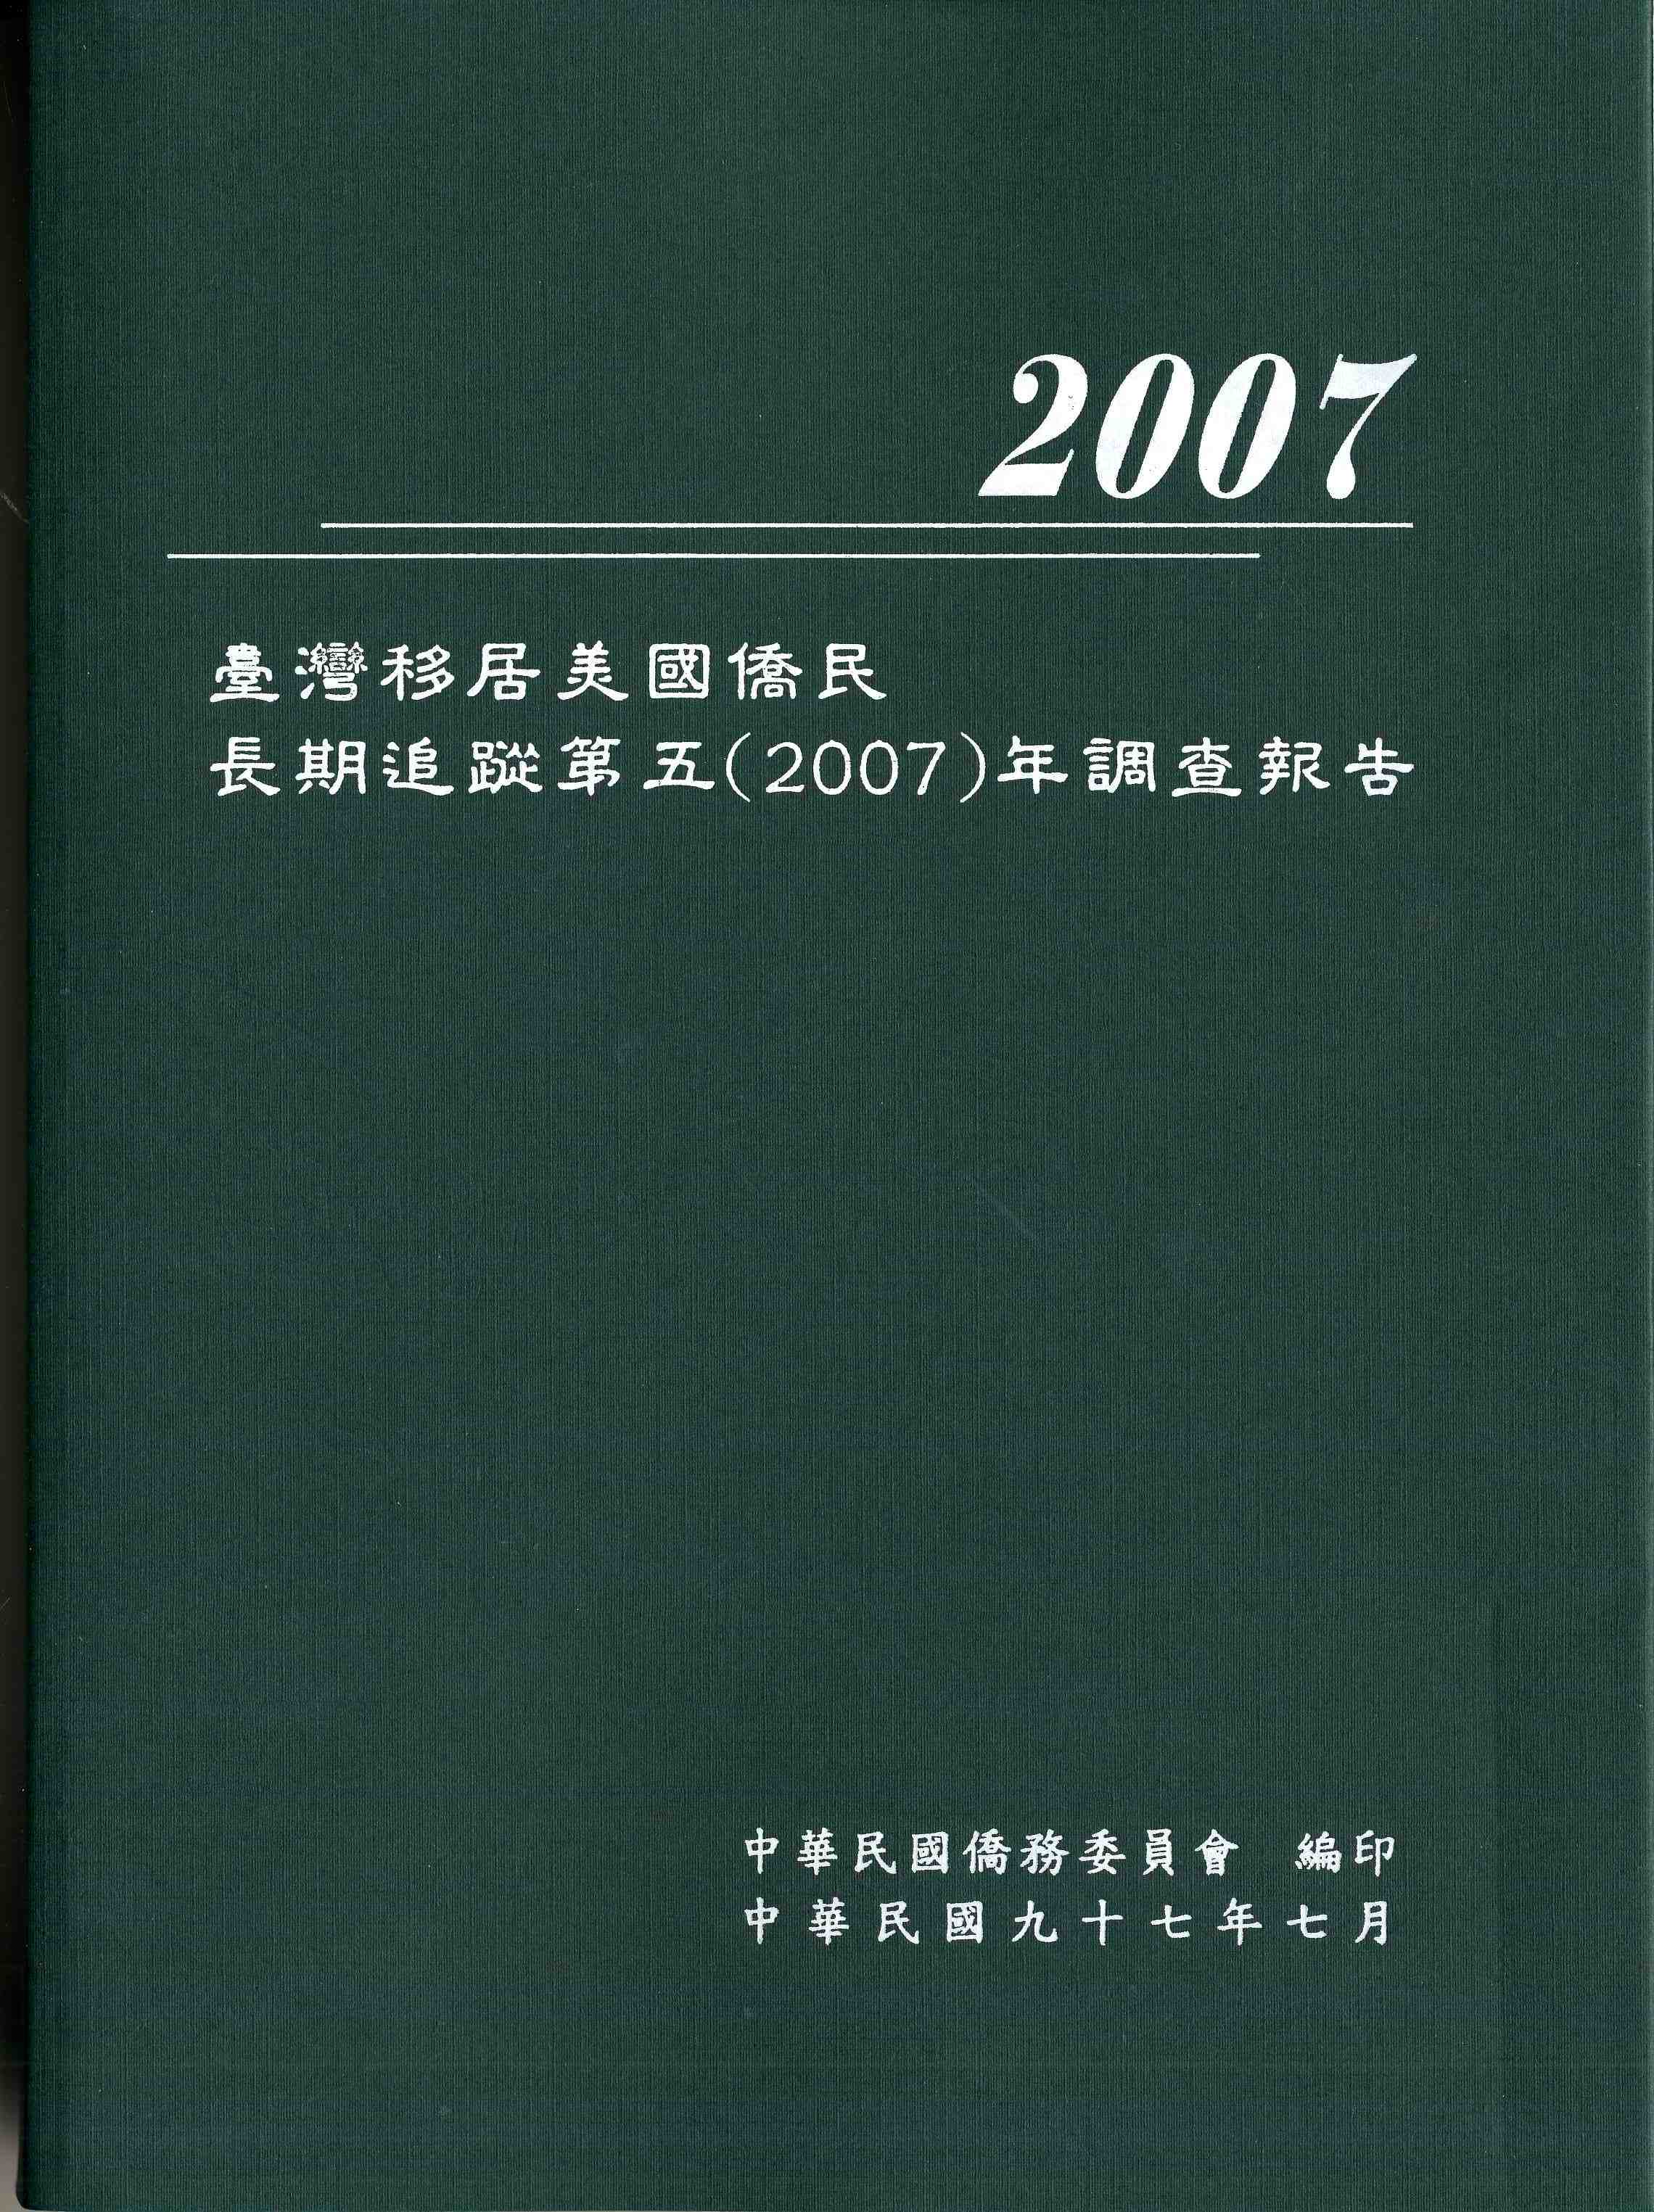 臺灣移居美國僑民長期追蹤第五（2007）年調查報告